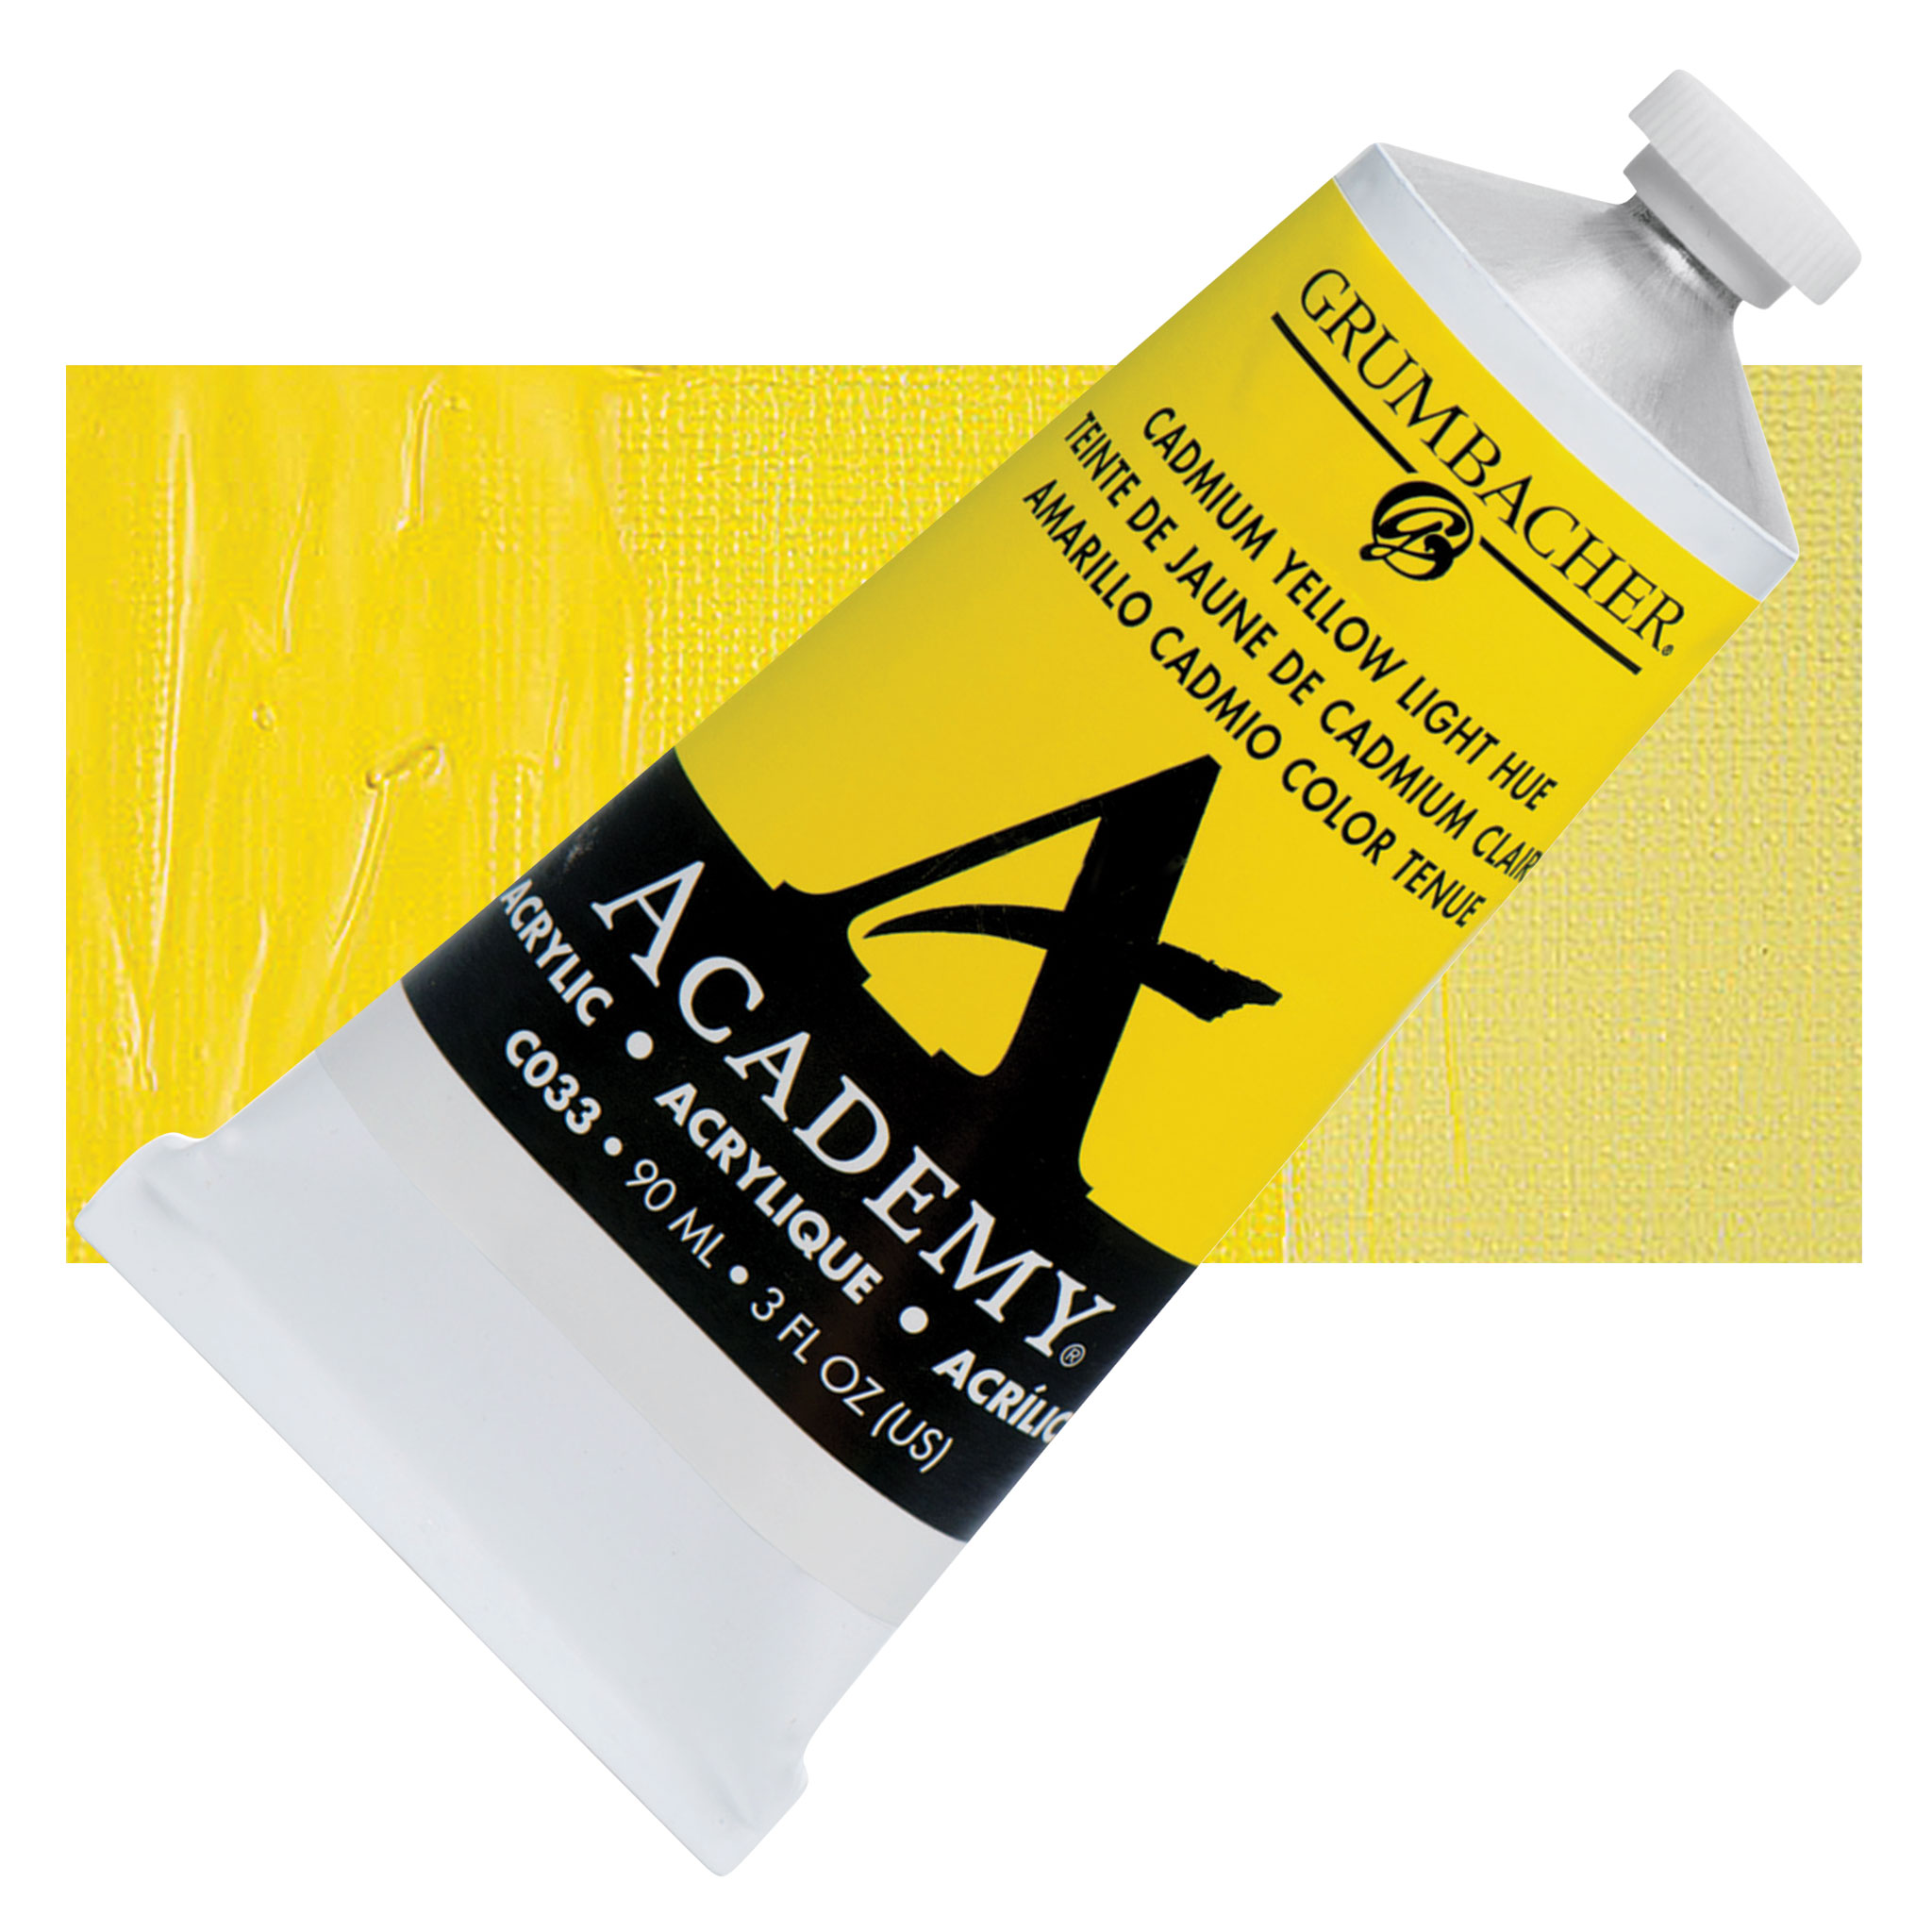 Acrylic paint - Cadmium yellow medium hue vs. cadmium-free yellow